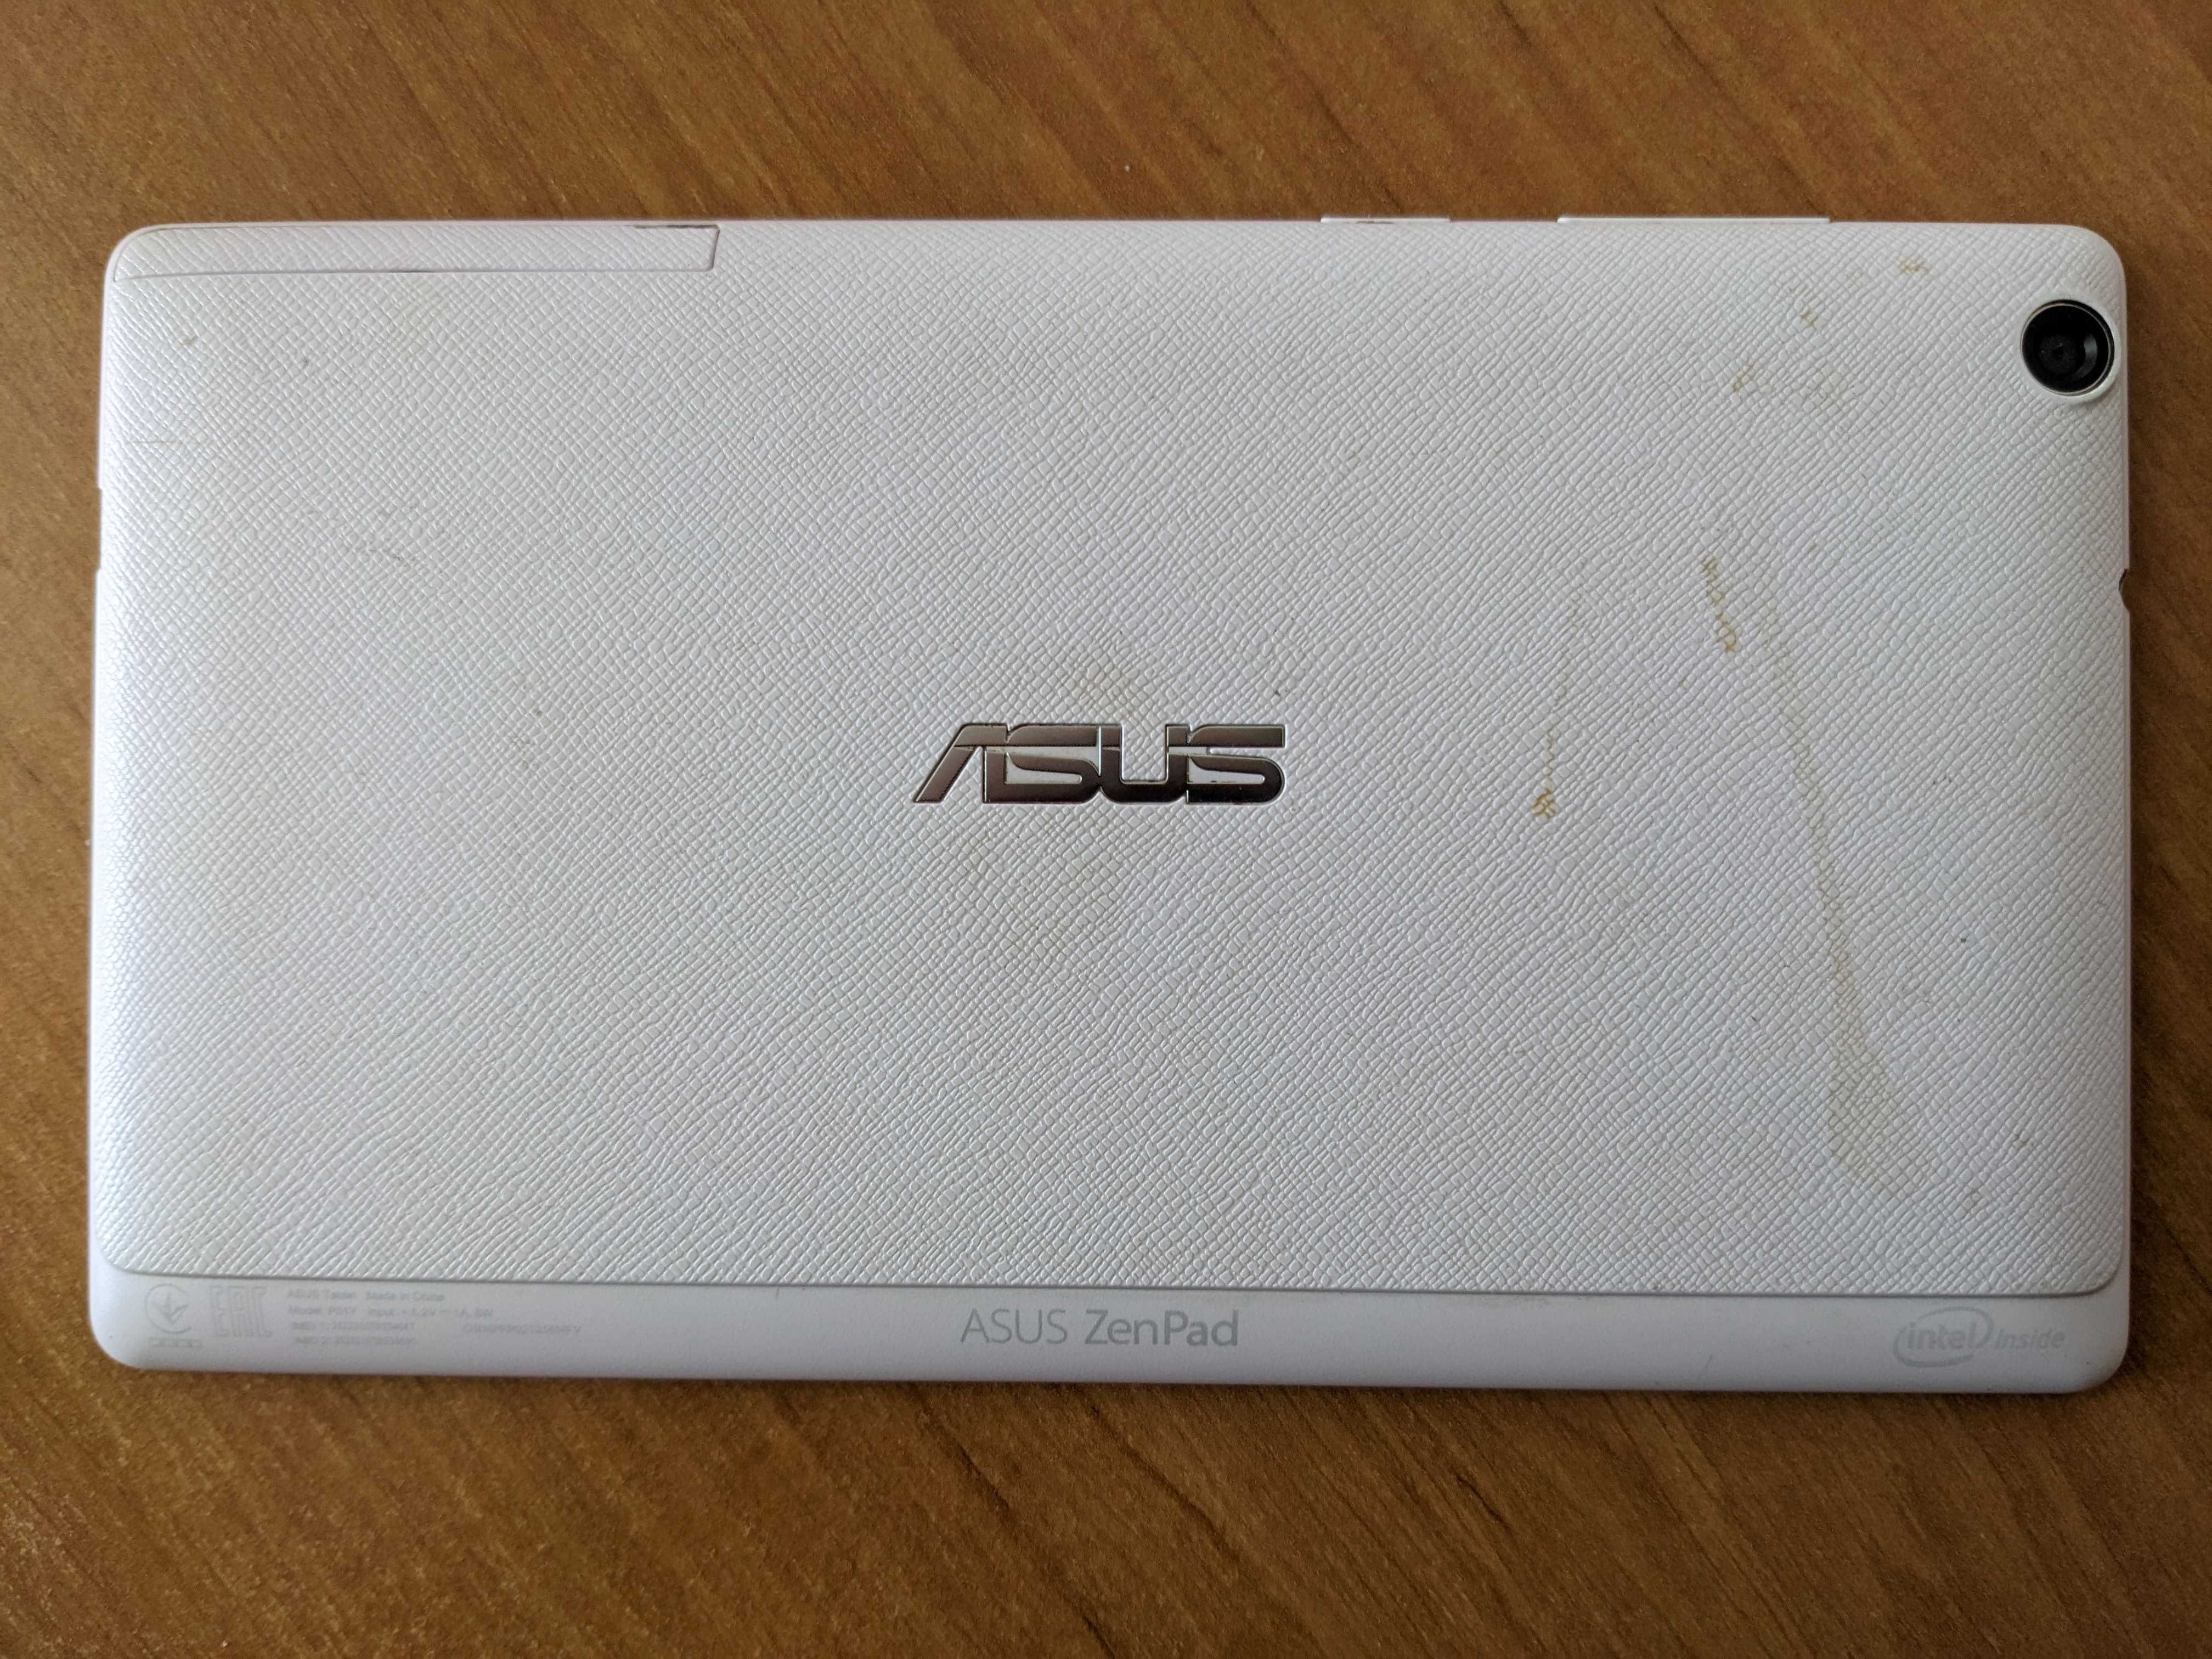 Планшет Asus ZenPad C 7 3G 16GB P01Y (Z170CG) на запчасти или ремонт